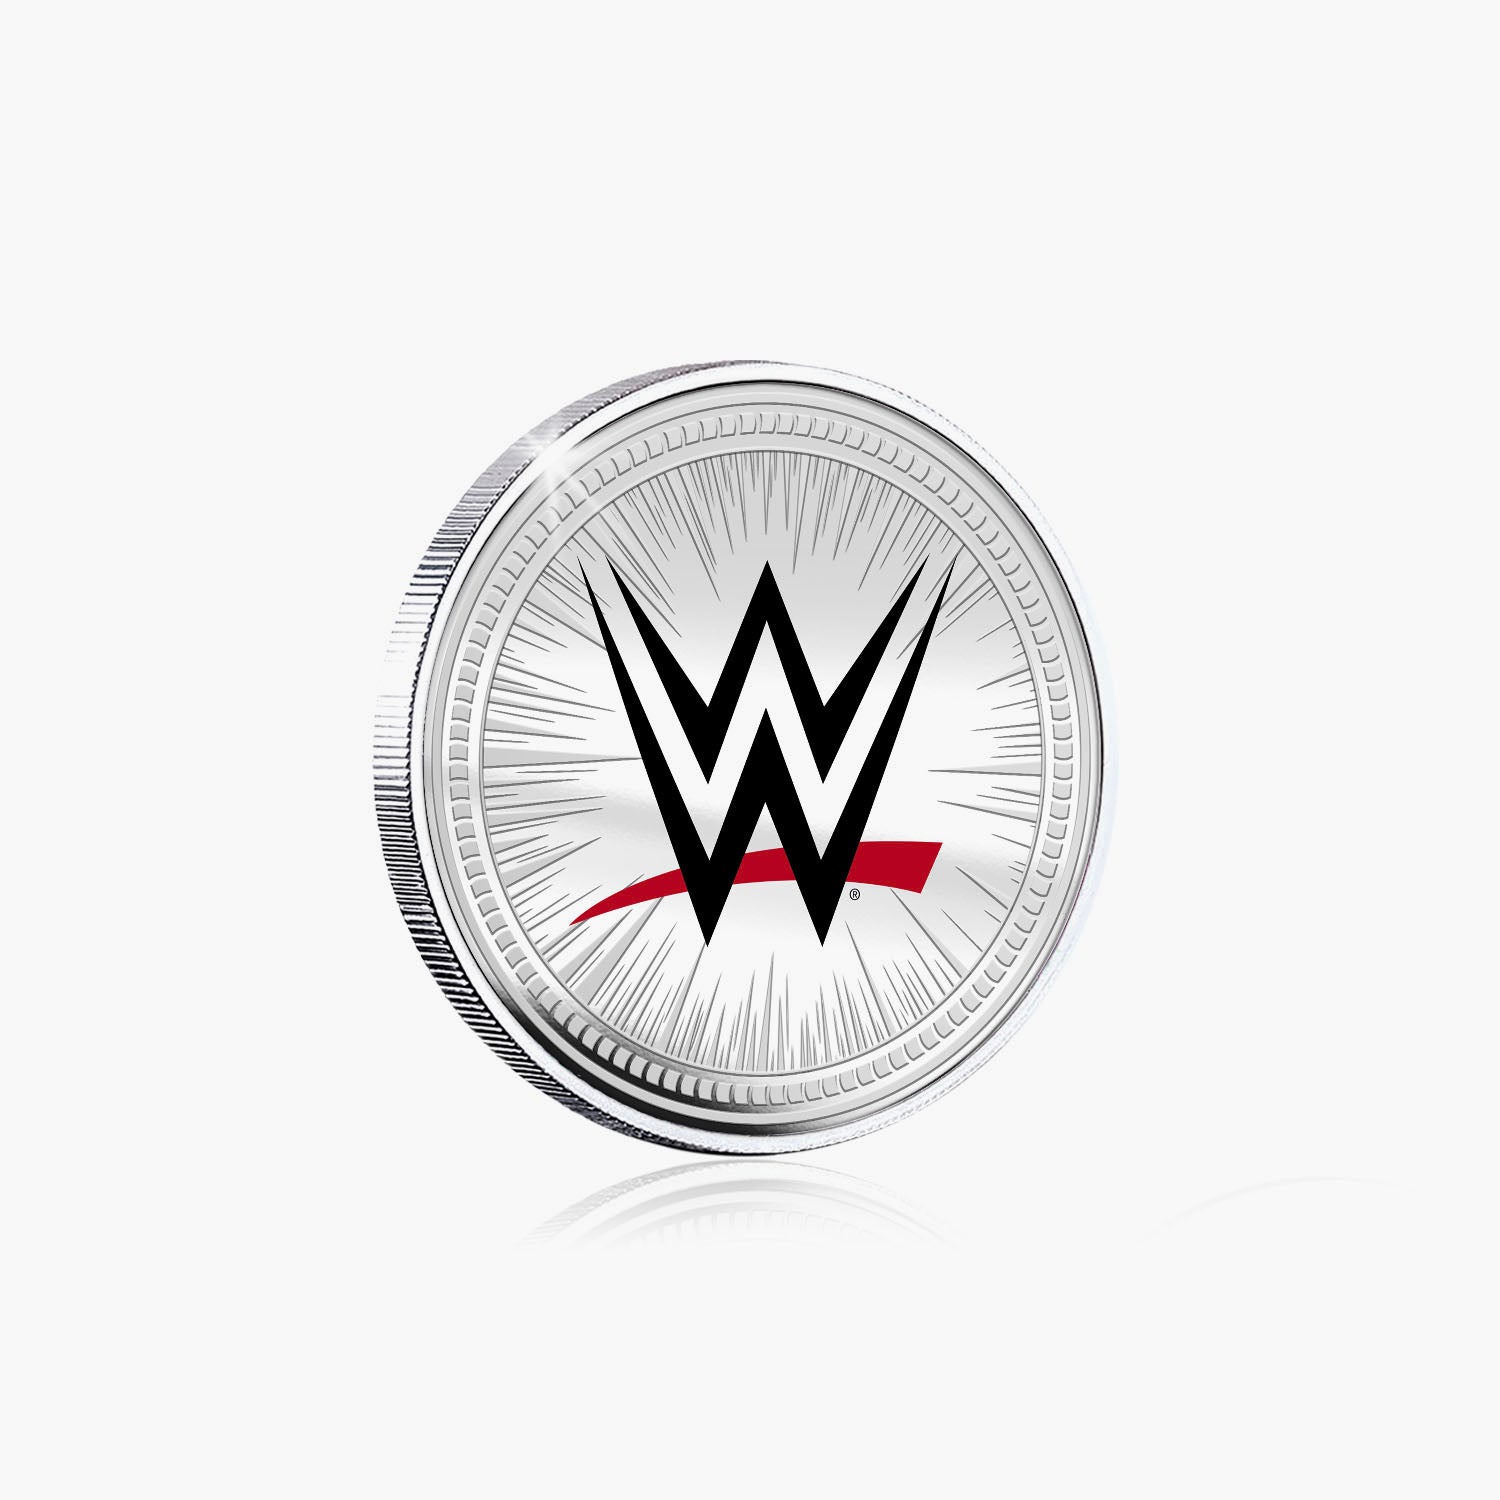 Collection commémorative WWE - LA Knight - Commémorative plaquée argent 32 mm